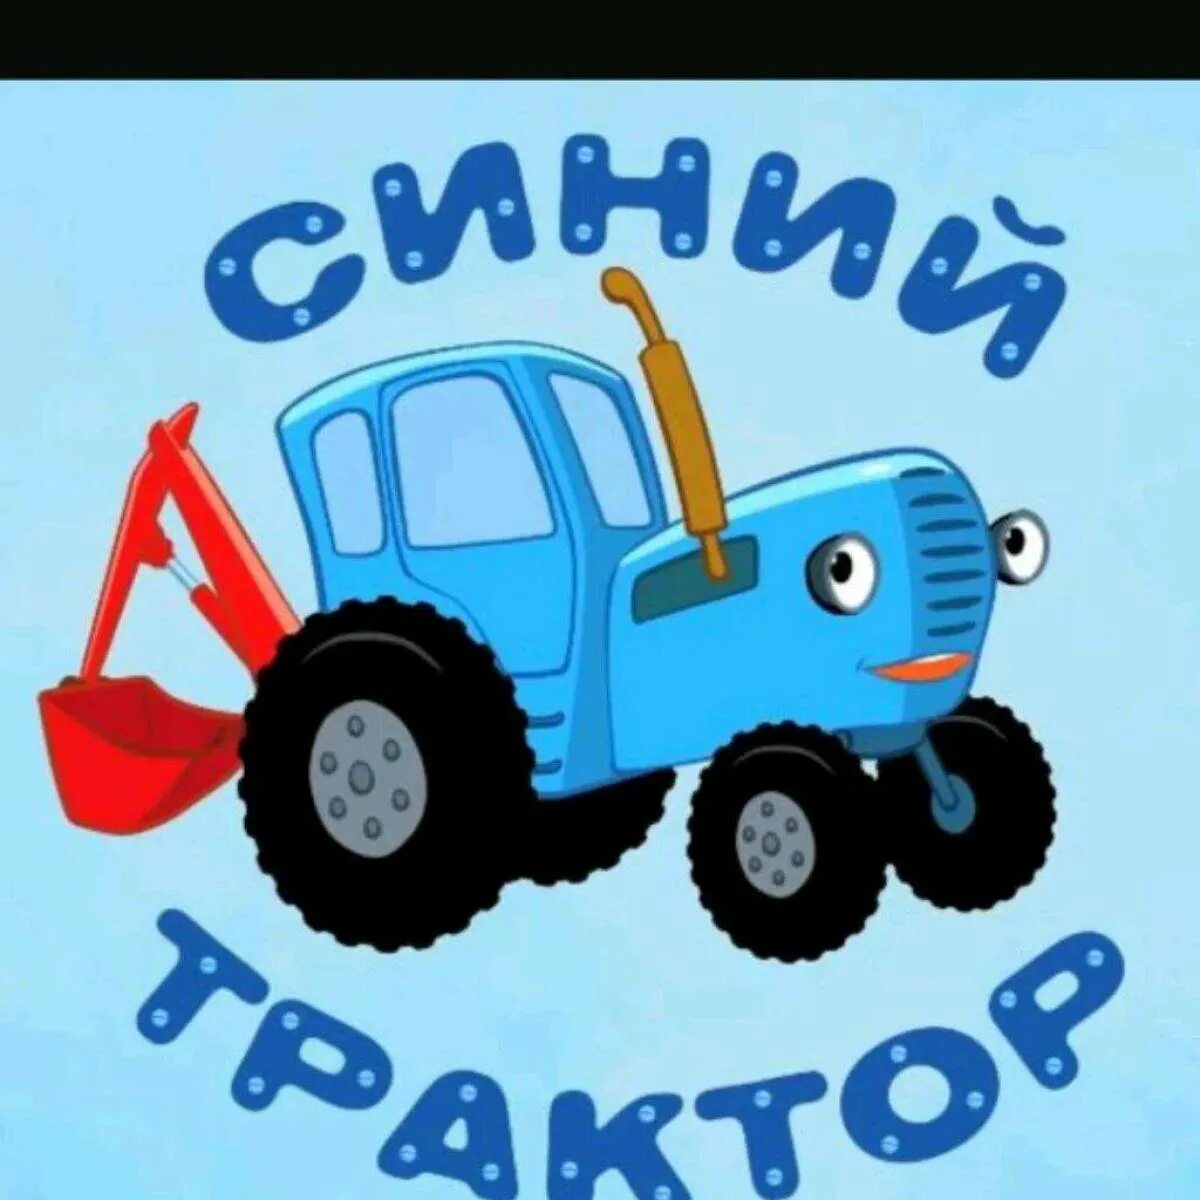 Синий трактор трактор Гоша. Сини1 синий трактор. Габор синий трактор. Синий трактор для малышей ТРАКТОРЕНОК. Синий трактор 30